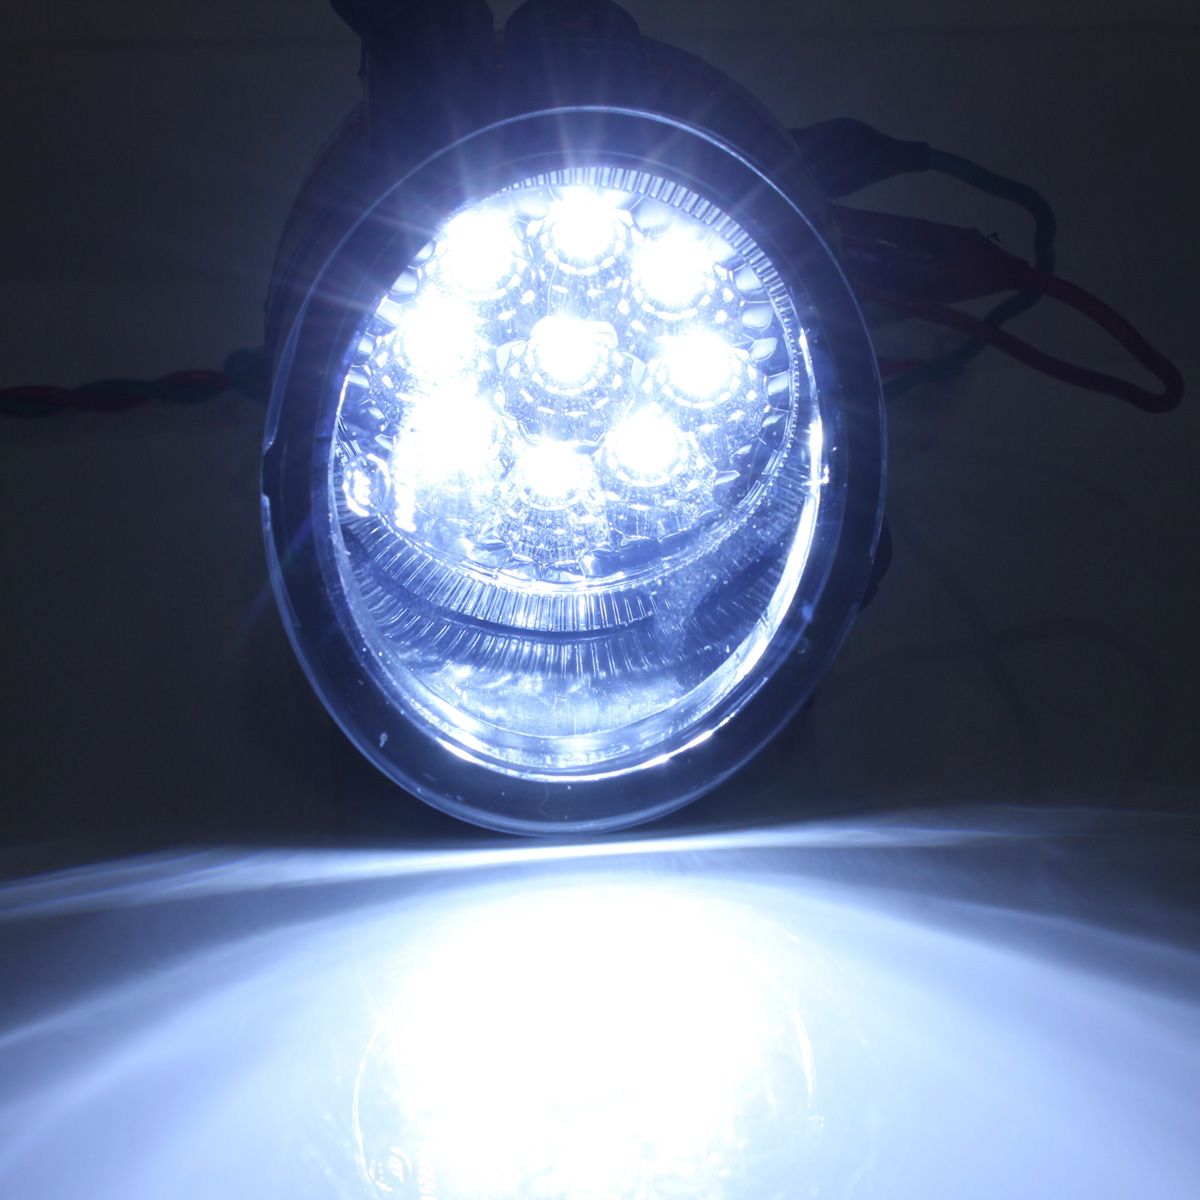 Pair-9-LED-White-Bright-Fog-Light-Lamp-Left--Right-For-VW-GOLF-MK5-JETTA-978069